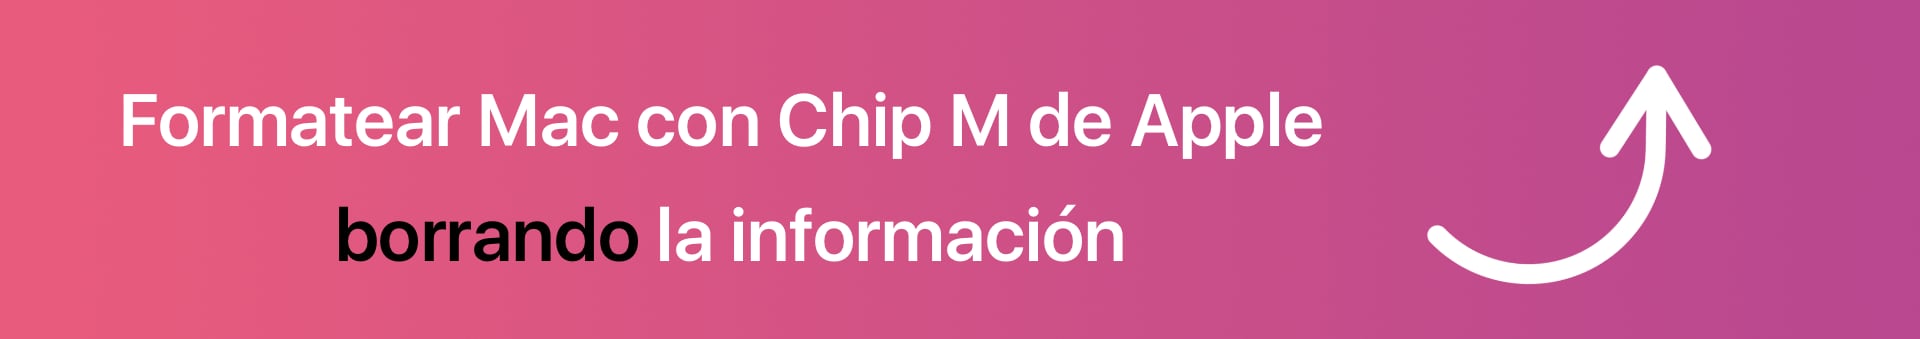 Formatear Mac con Chip M